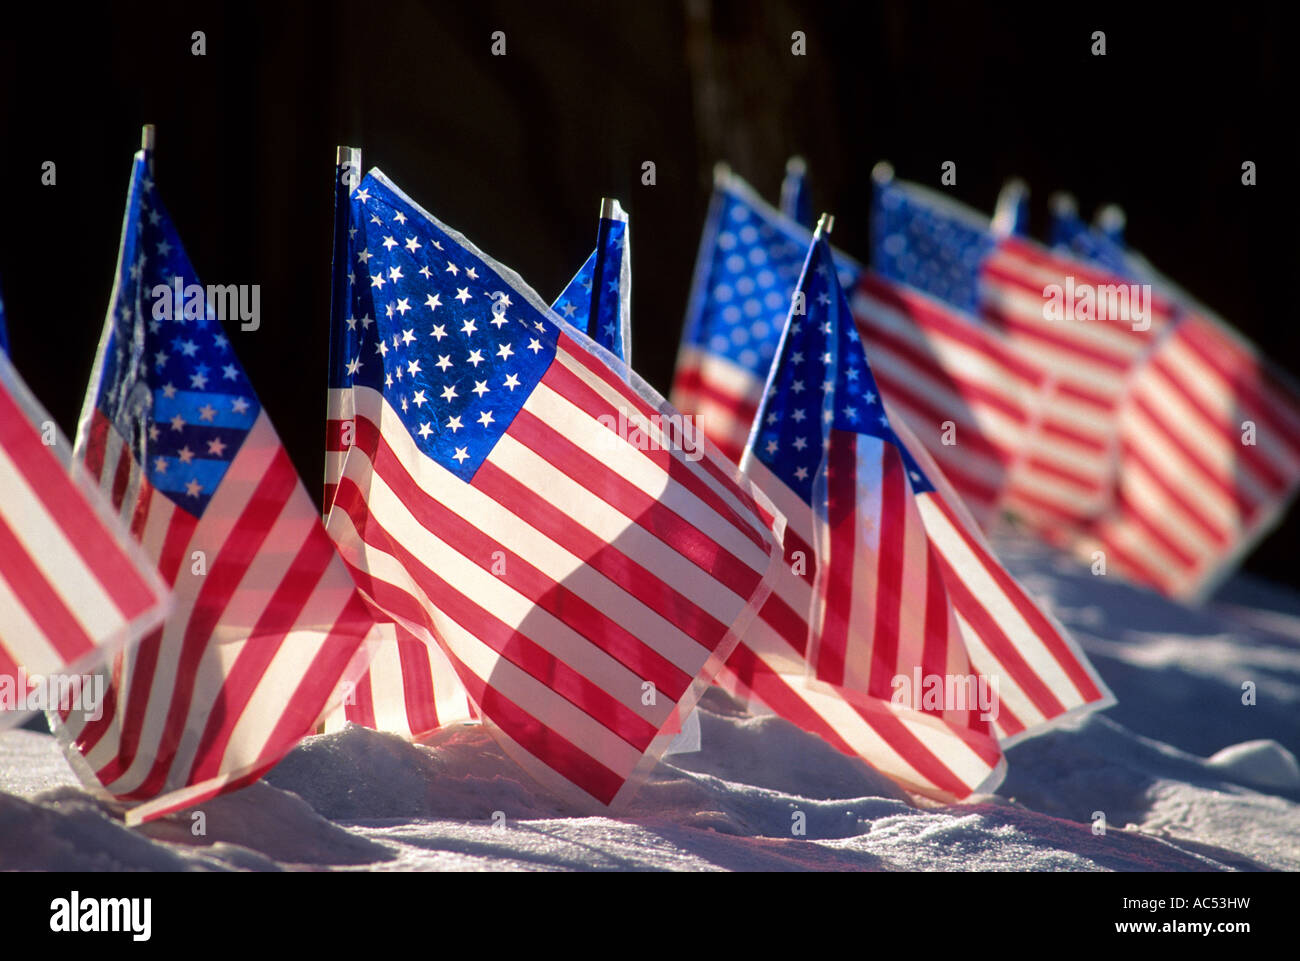 Des drapeaux américains DANS LA COUR AVANT D'UNE MAISON AU MINNESOTA. L'hiver. Banque D'Images